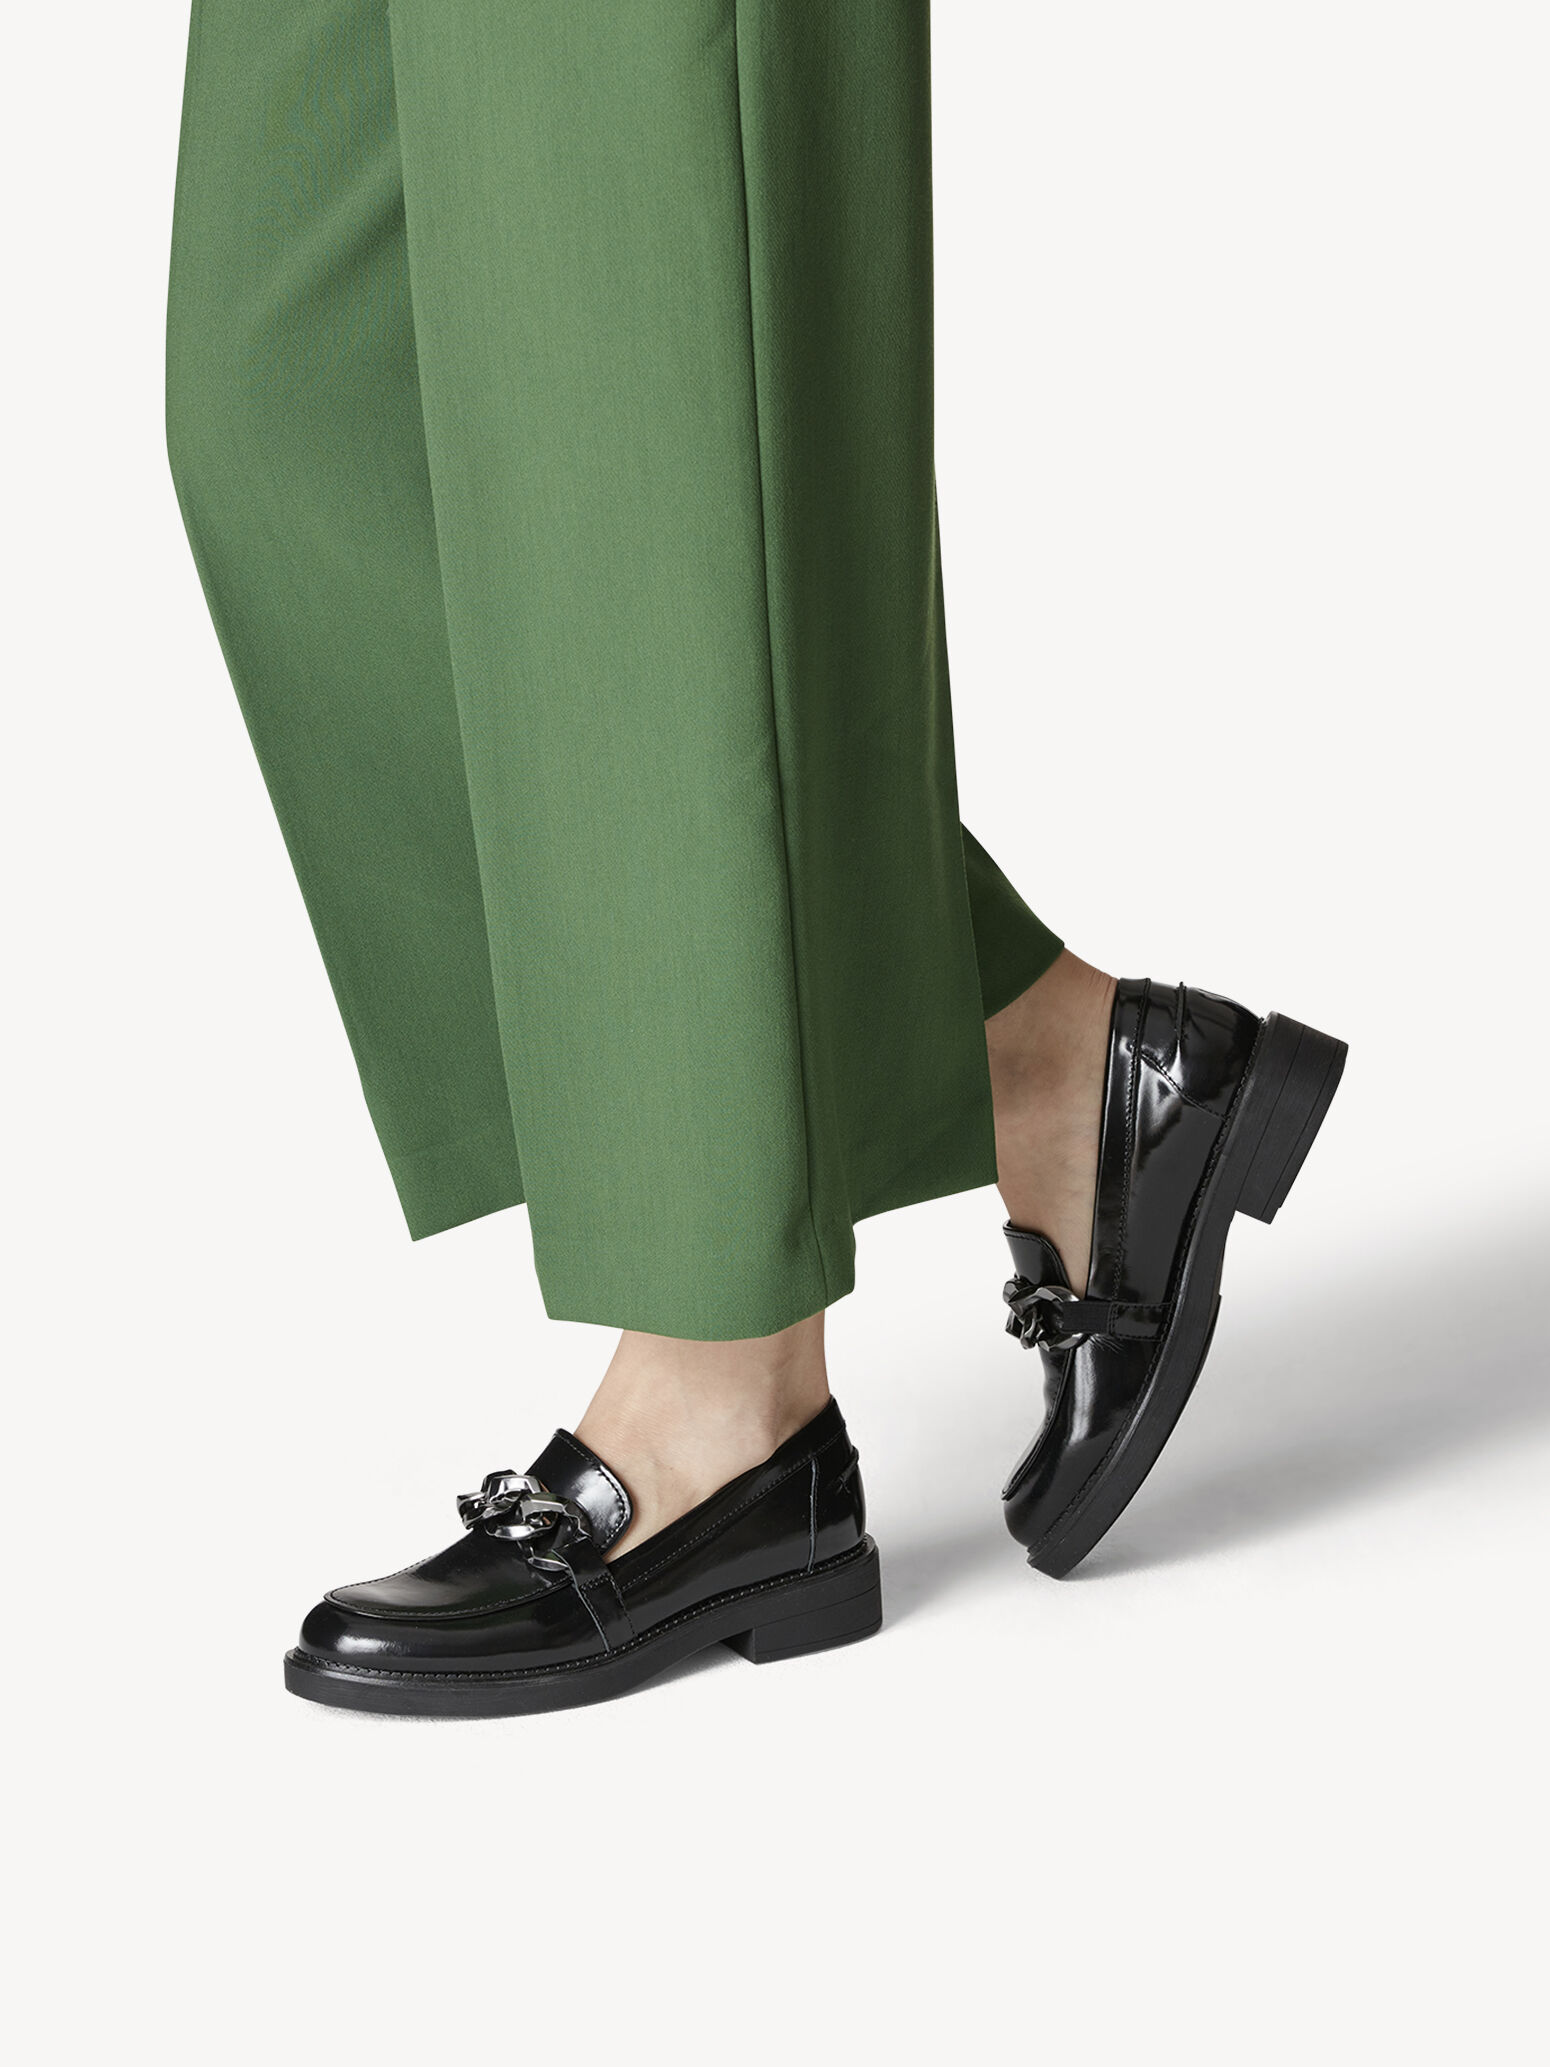 Schoenen Lage schoenen Instappers Zara Instappers wit-azuur casual uitstraling 